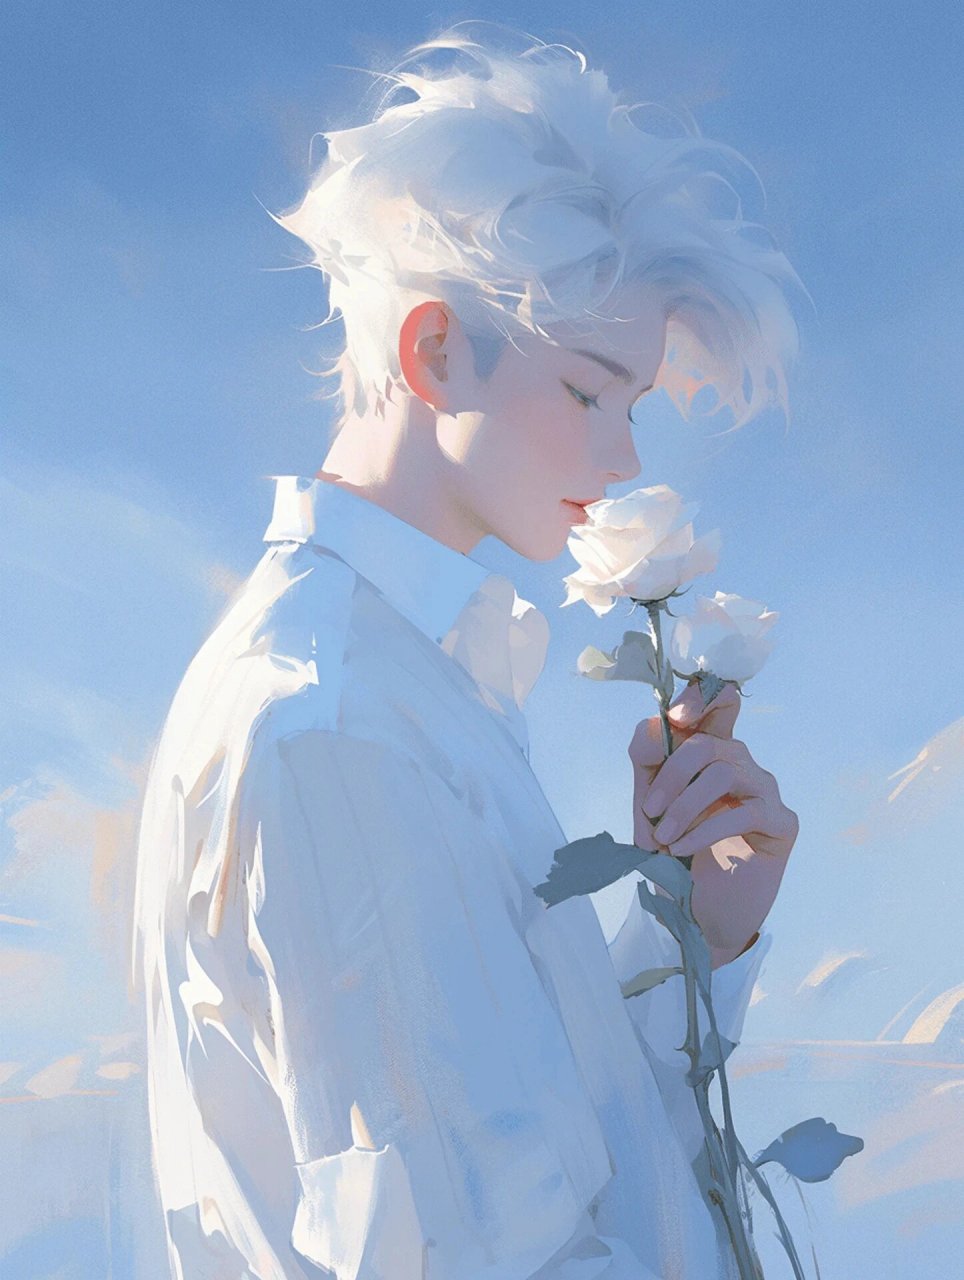 【玫瑰男生头像】手持玫瑰,永恒爱意 白色玫瑰,纯白无暇